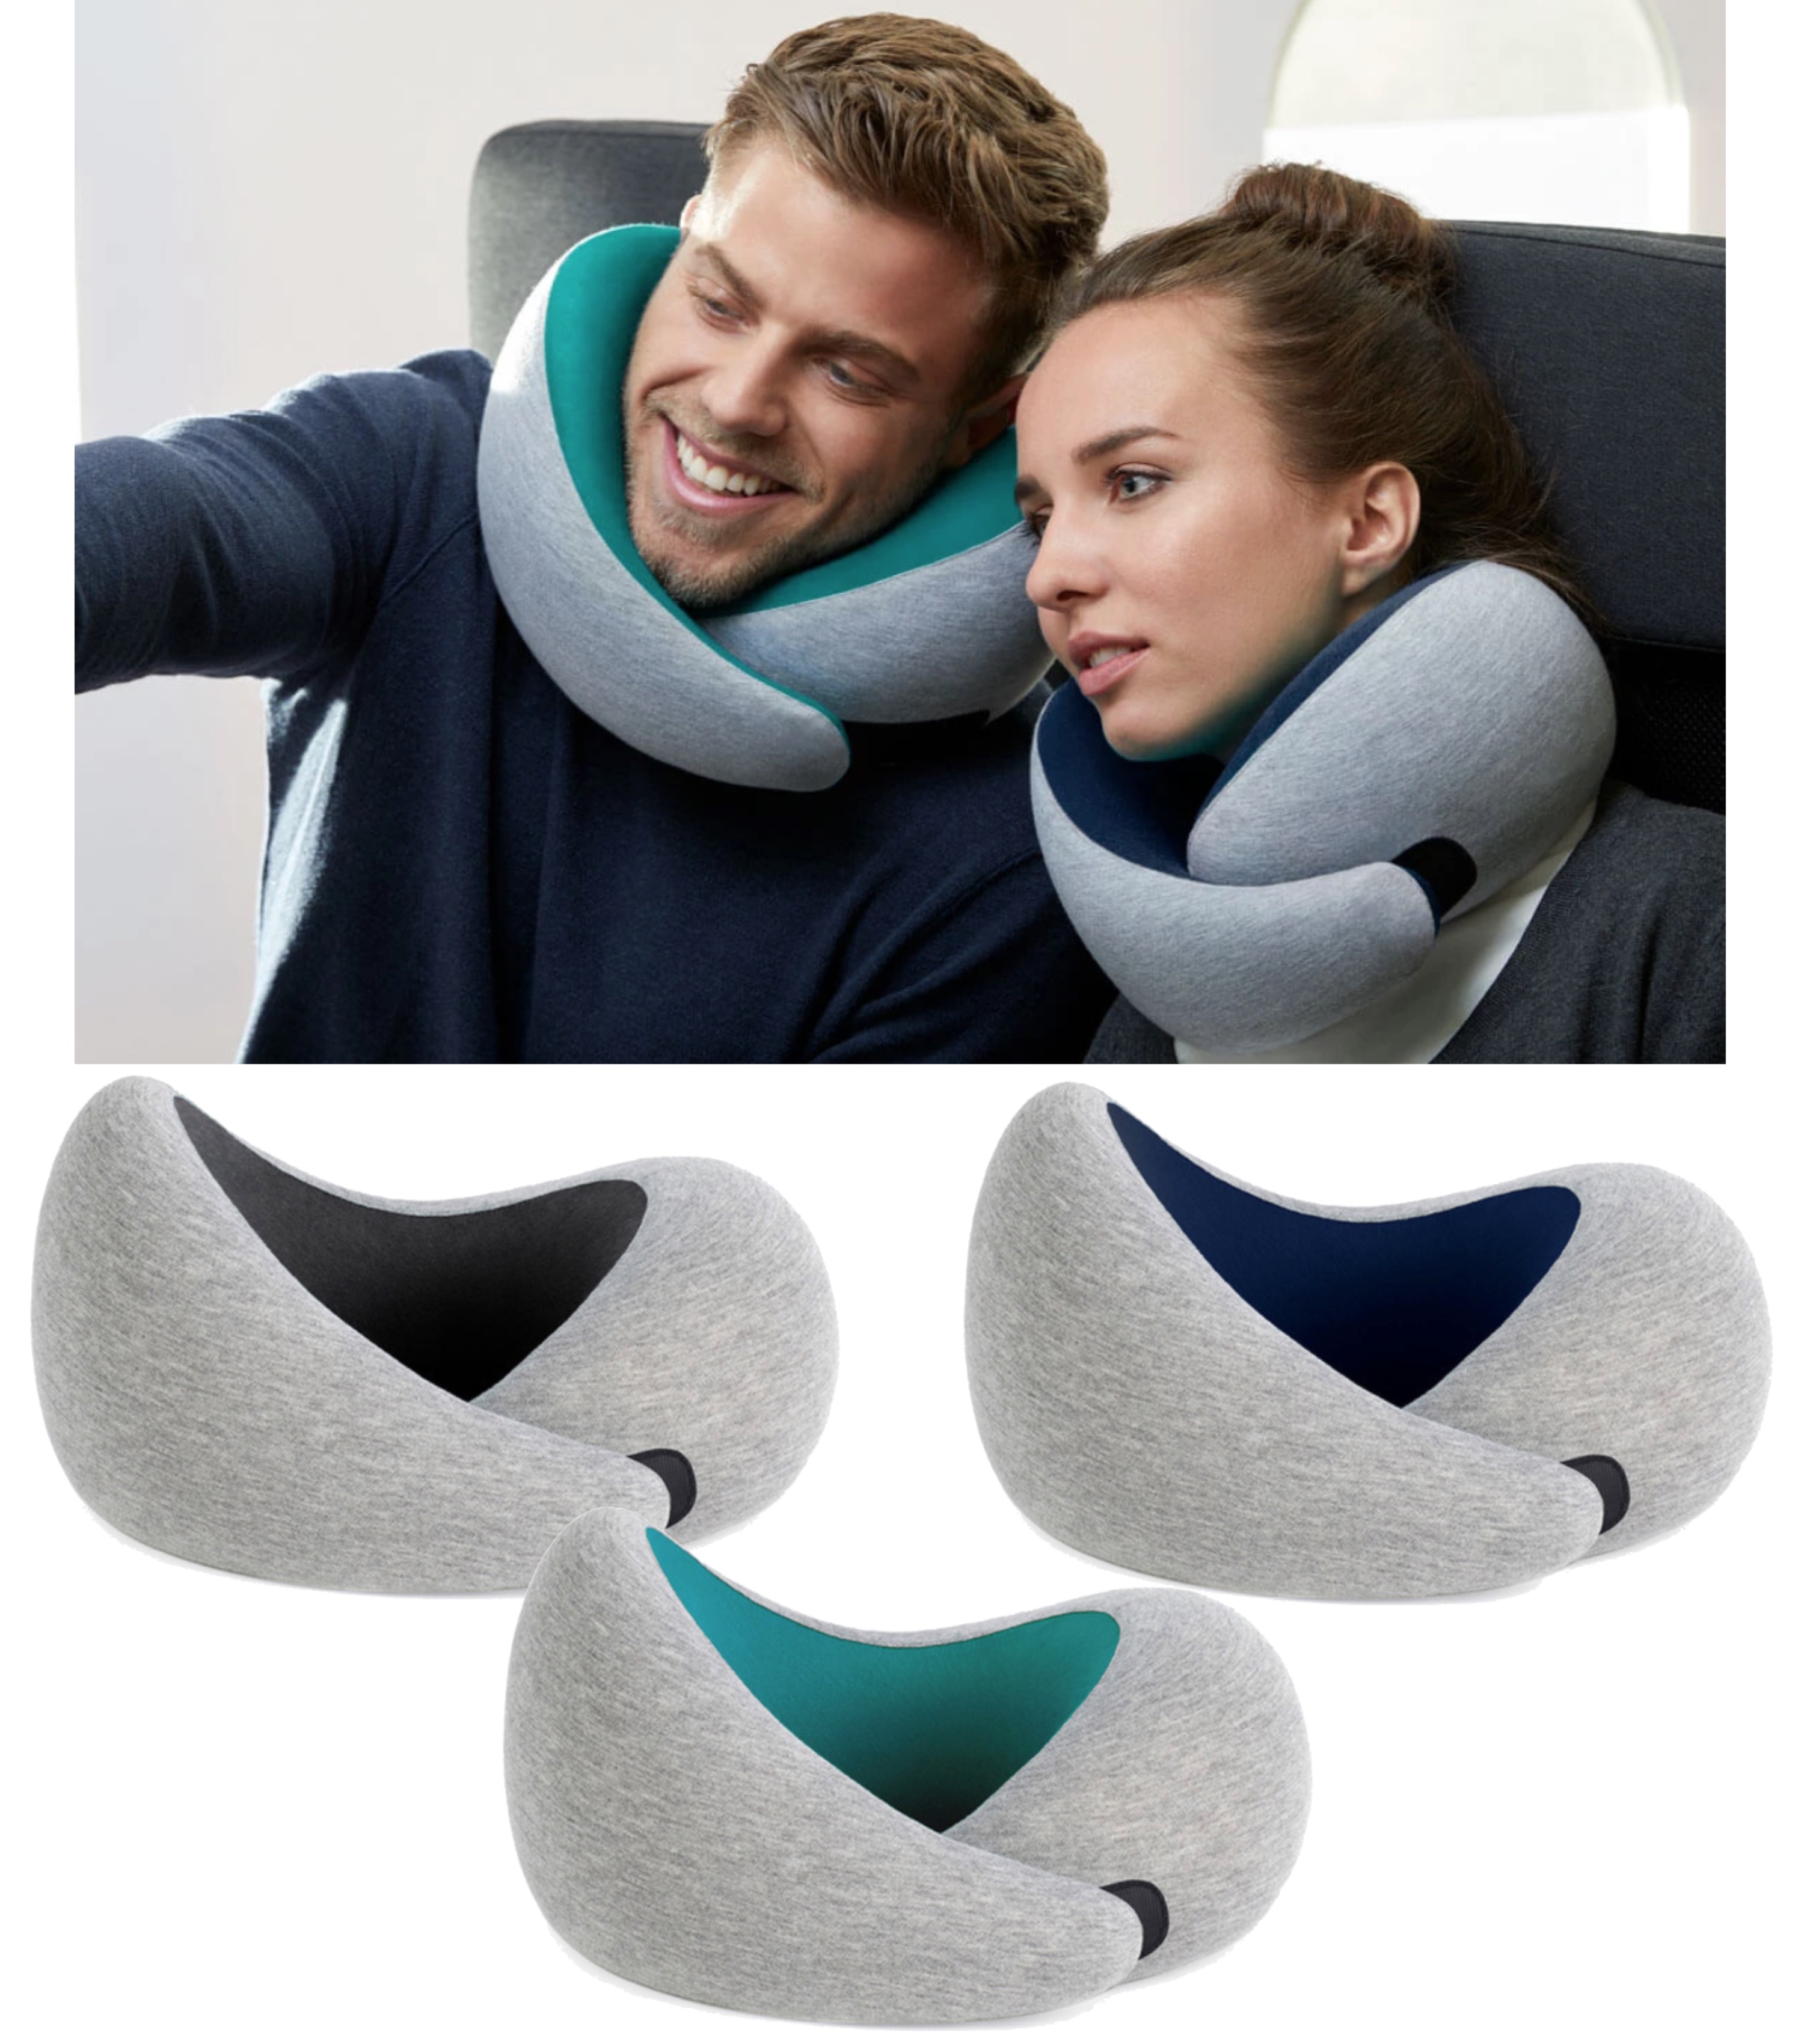 Ostrich Pillow Go Memory Foam Travel Pillow By Ostrich Pillow Go Travel Pillow